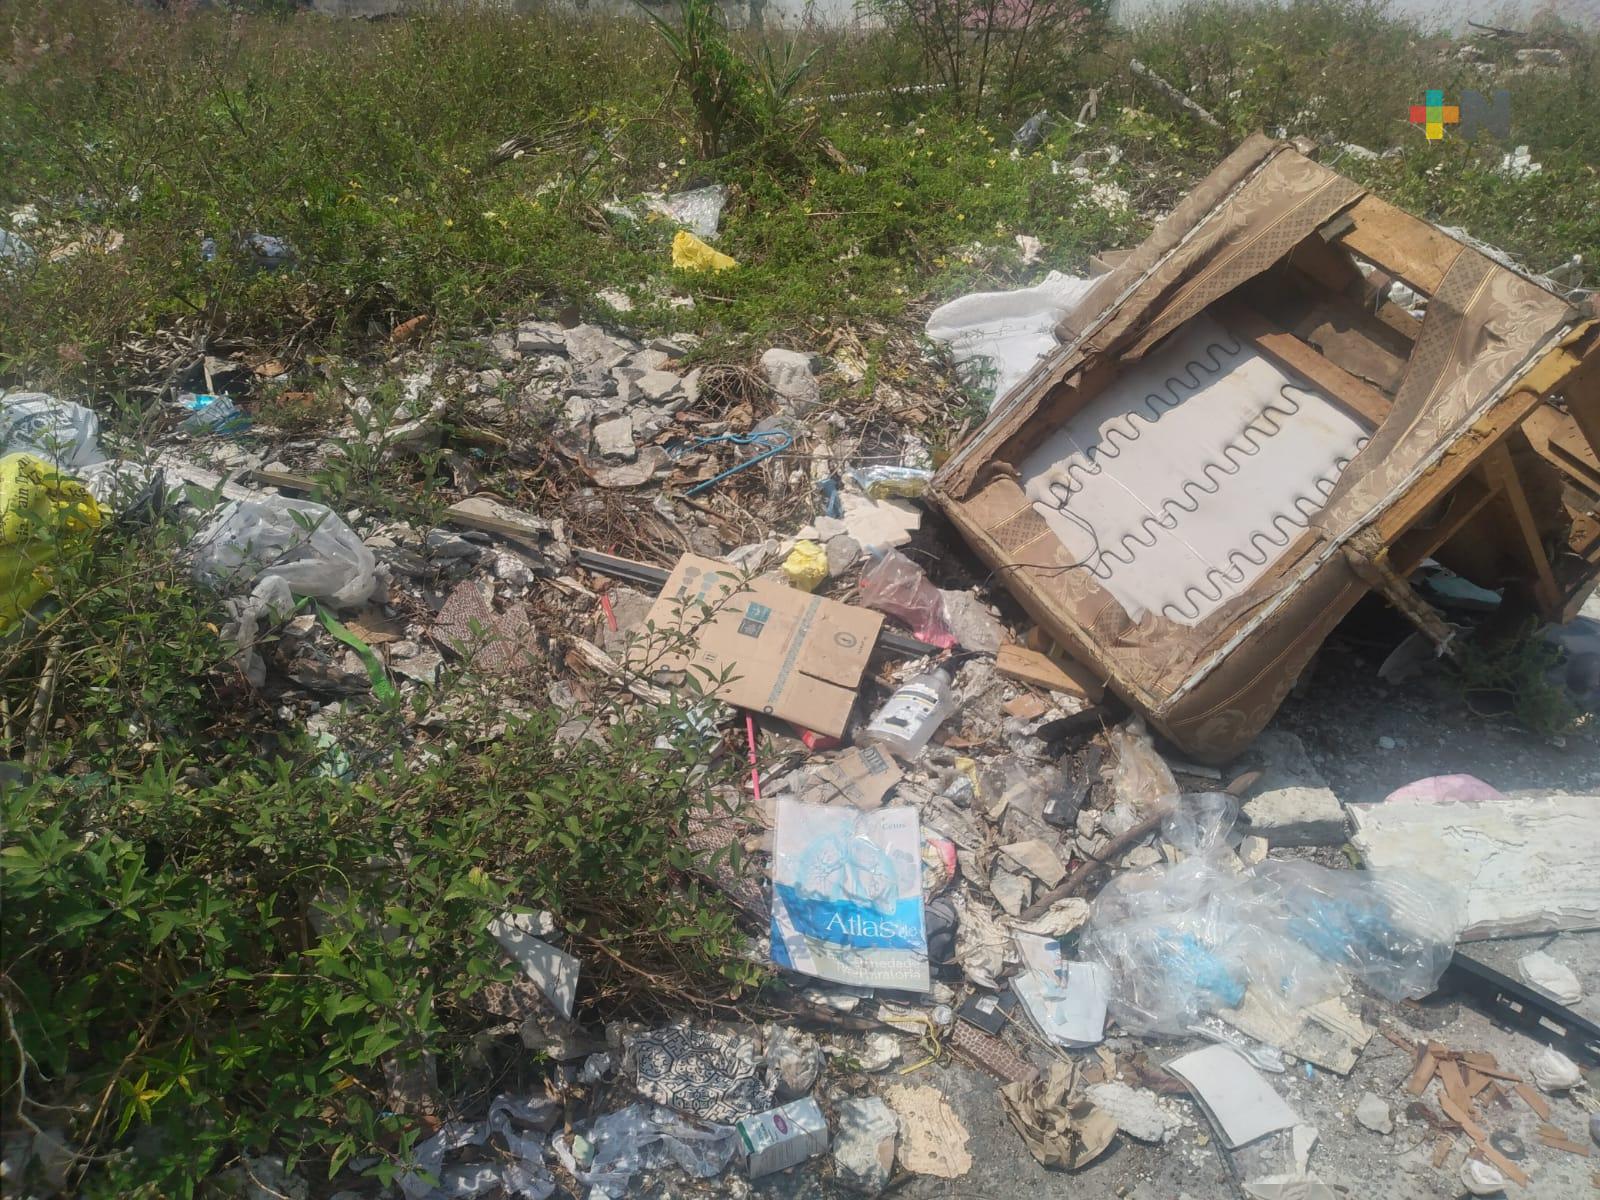 Lote abandonado es usado como tiradero de basura en Veracruz puerto, denuncian vecinos